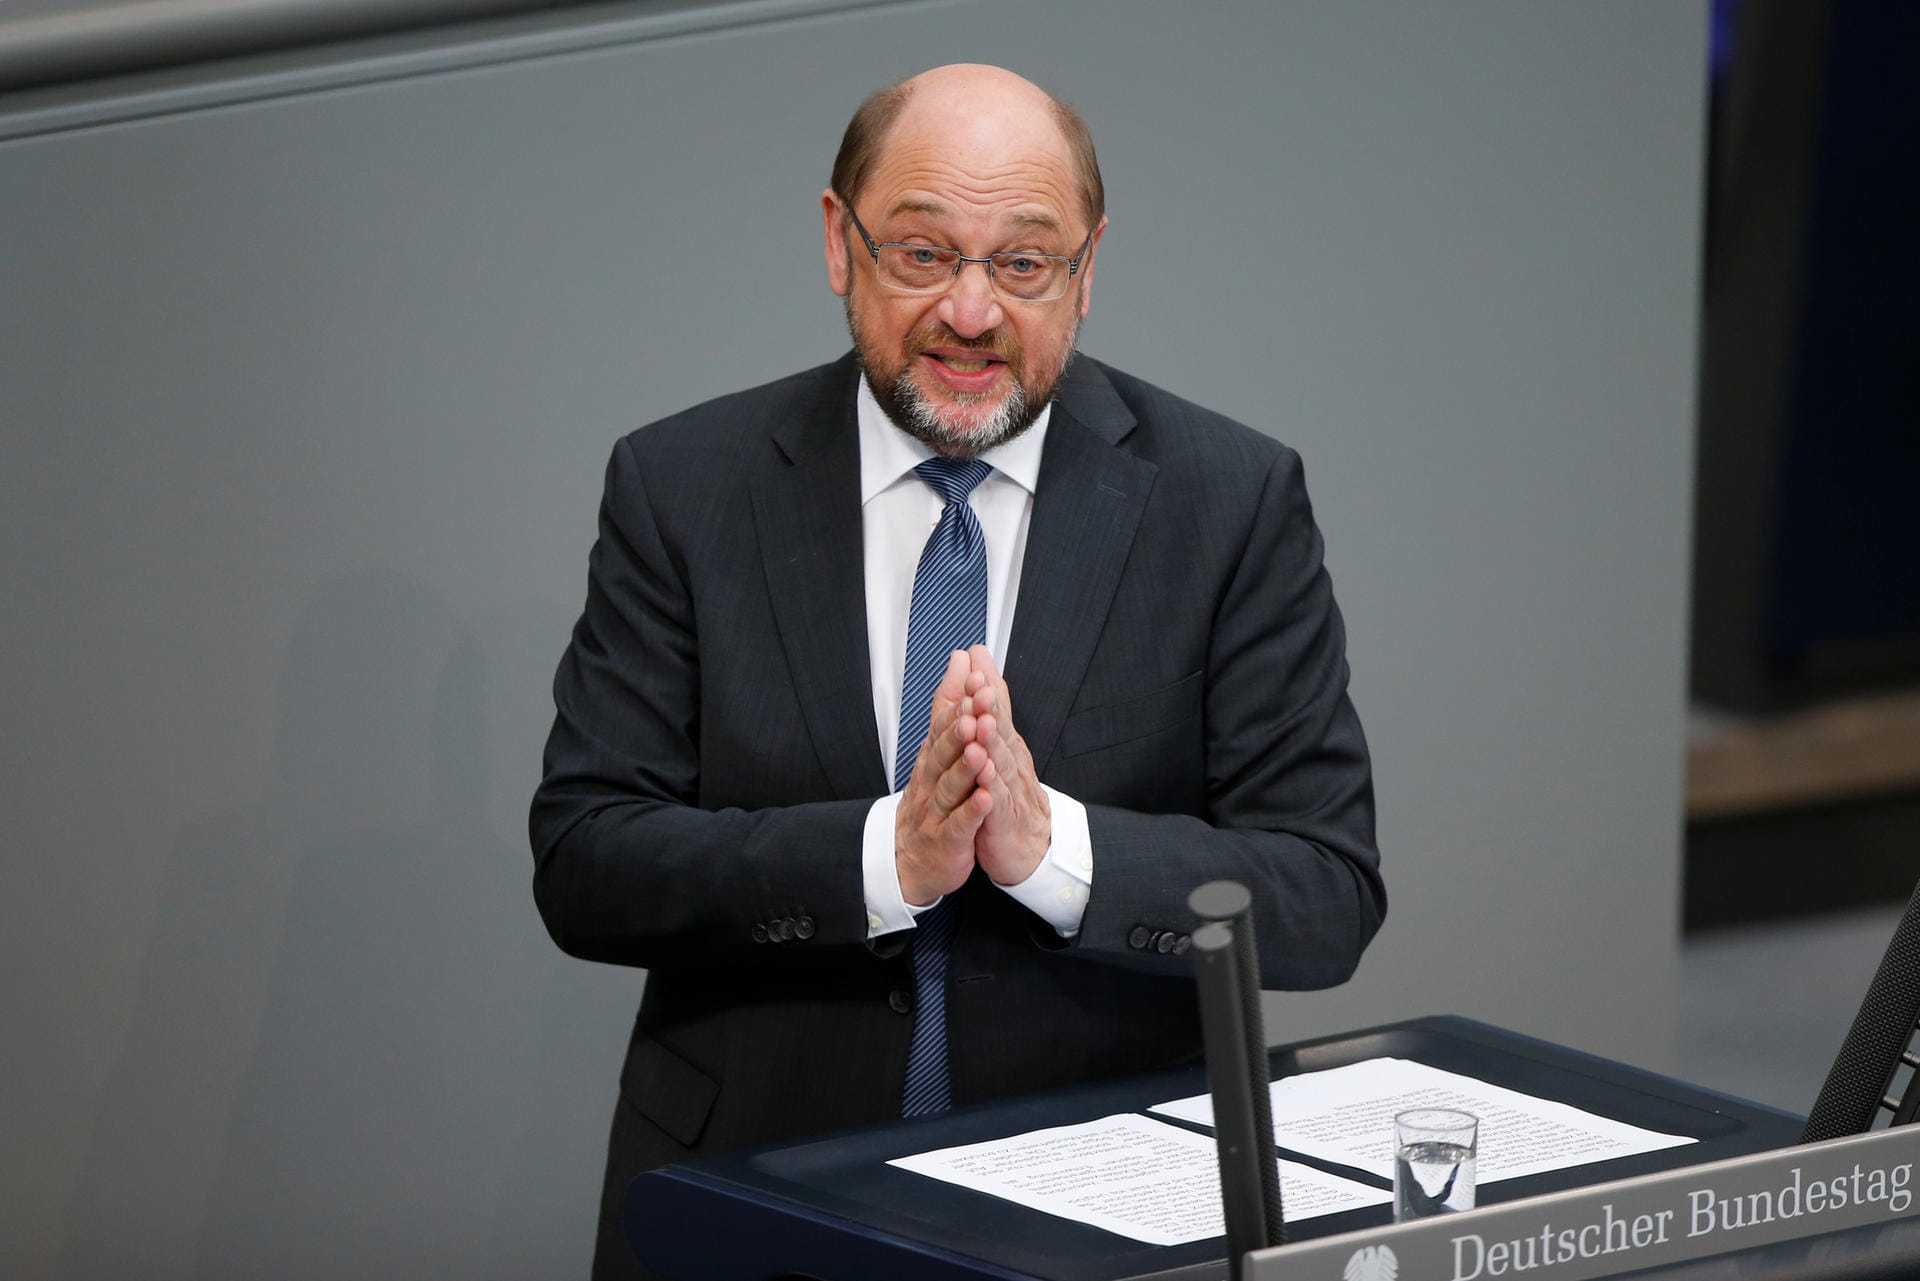 Ehemaliger Präsident des EU-Parlaments Martin Schulz: "Von der Leyen ist bei uns die schwächste Ministerin. Das reicht offenbar, um Kommissionschefin zu werden."